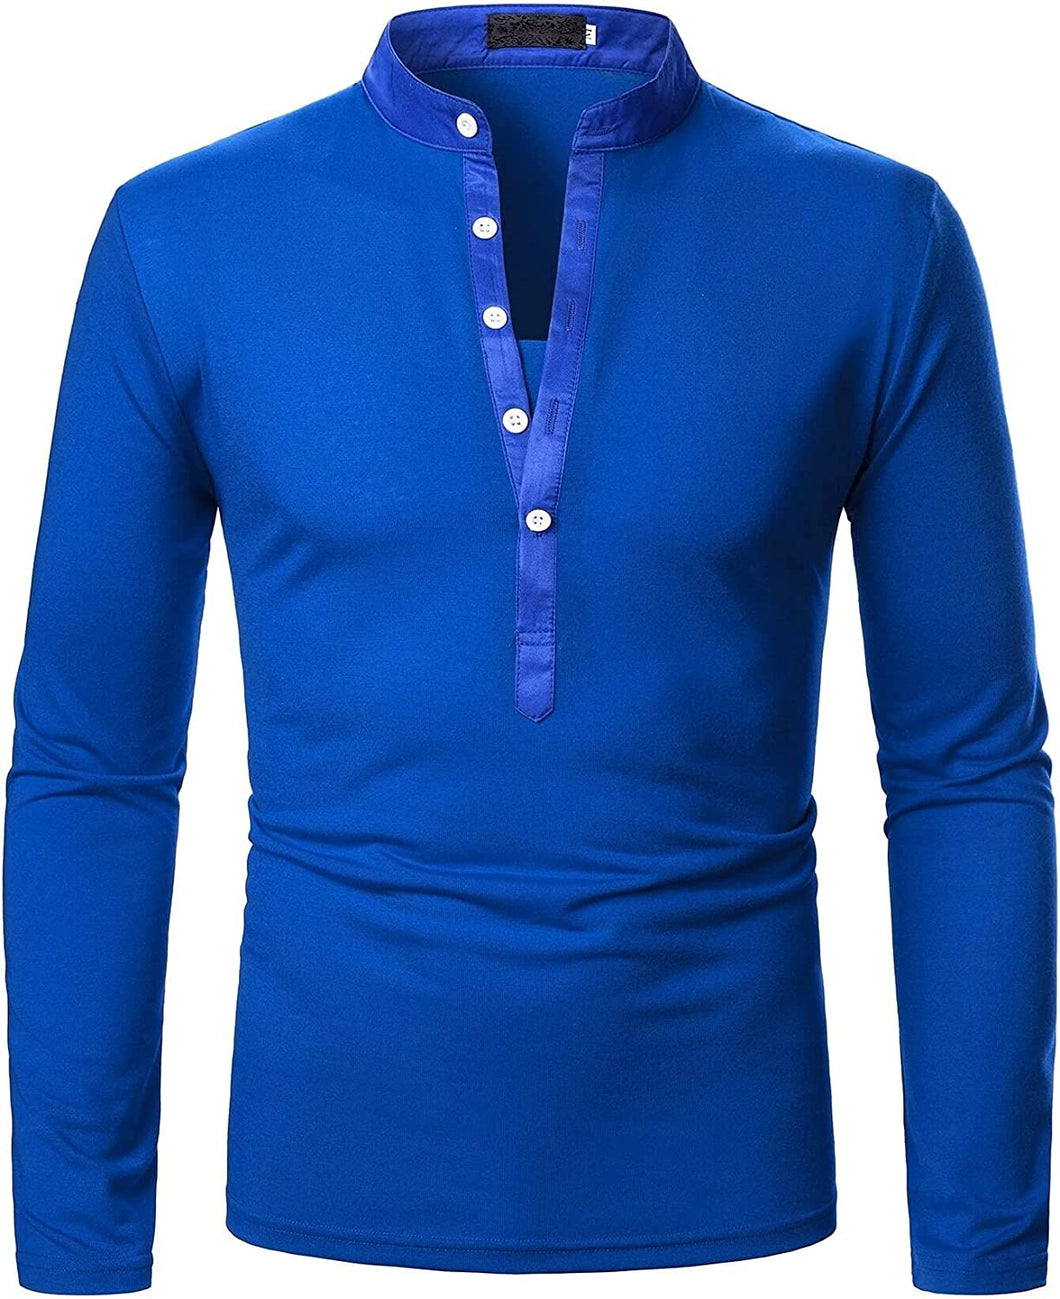 Men's Blue Casual Long Sleeve Henley Shirt